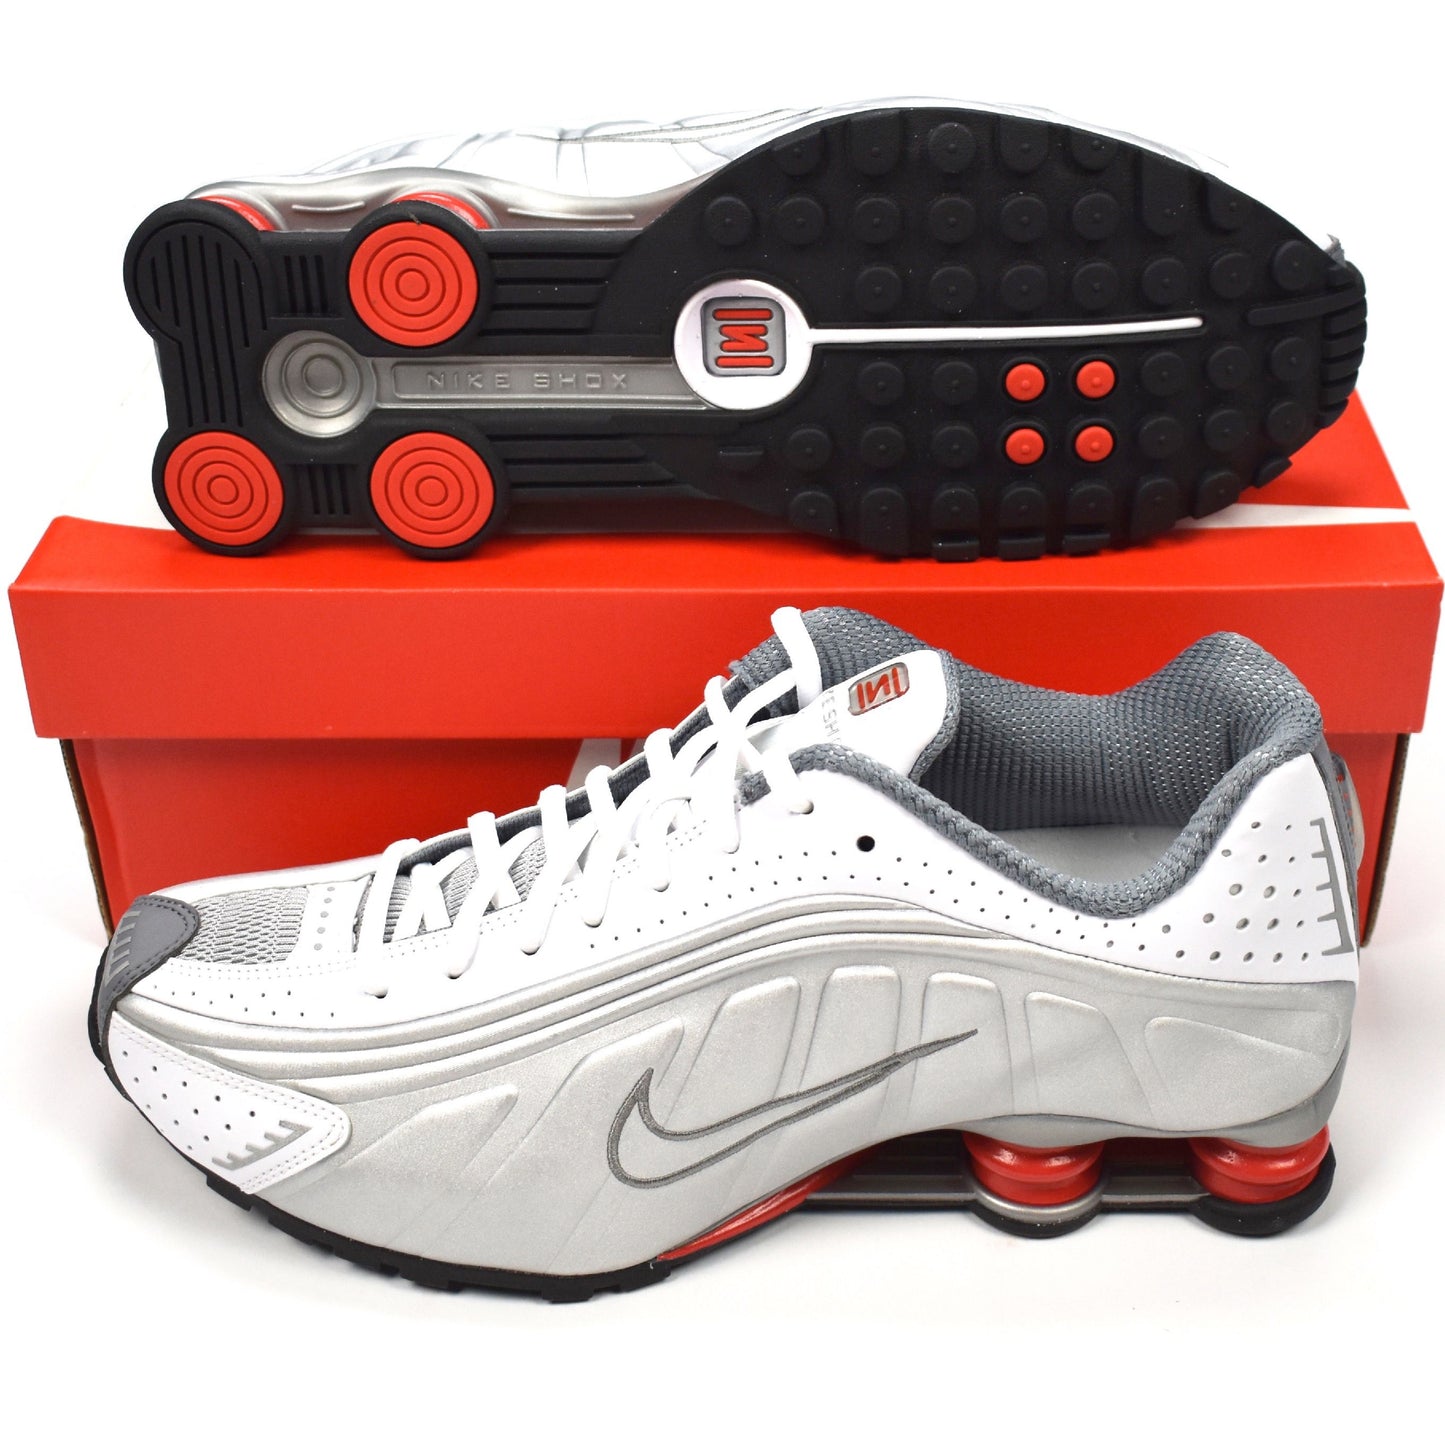 Nike - Shox R4 OG (White/Silver/Red)